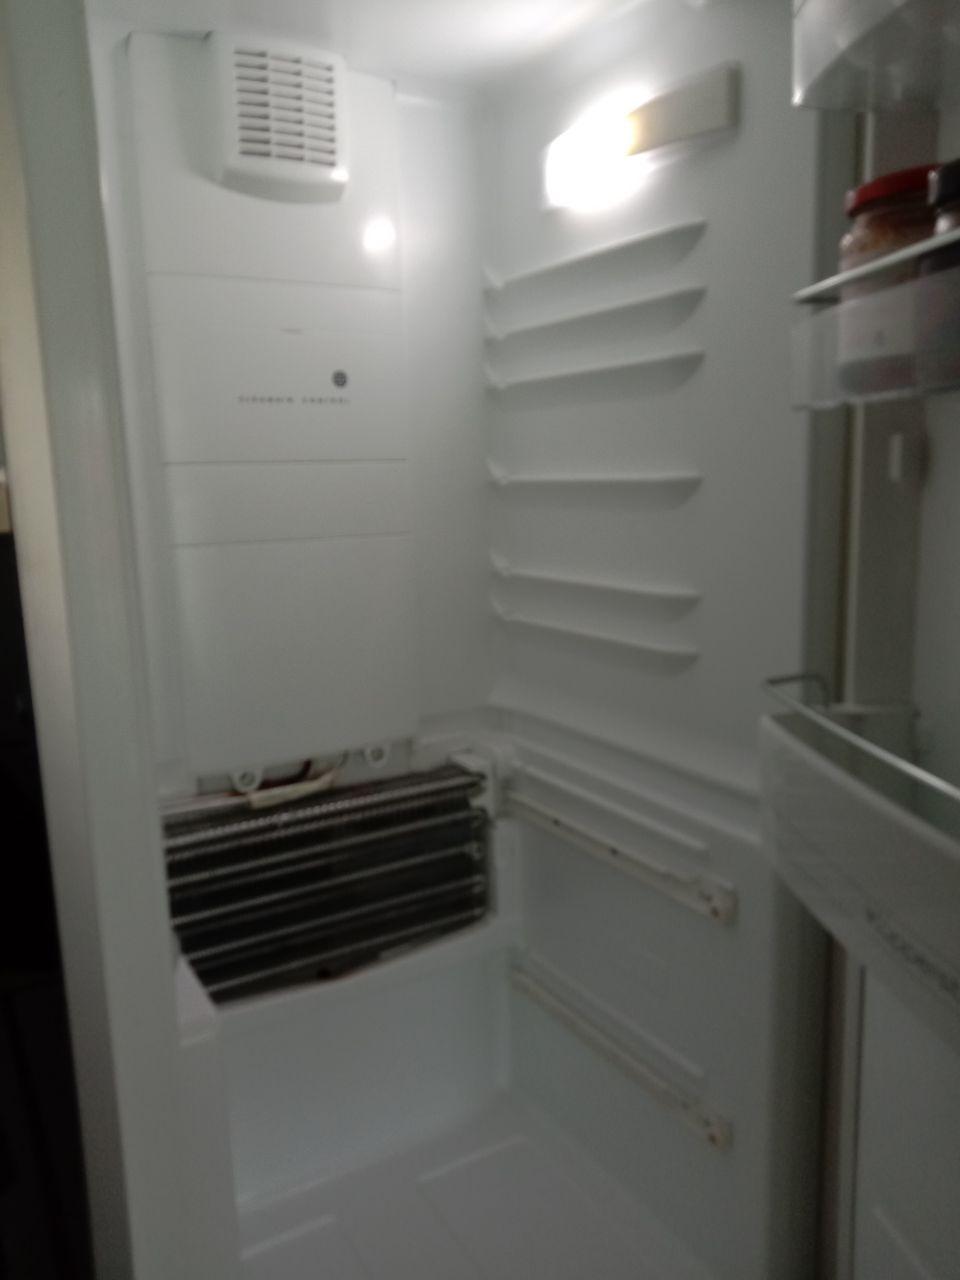 Фото открытого холодильника бренда General Electric (Дженерал Электрик)